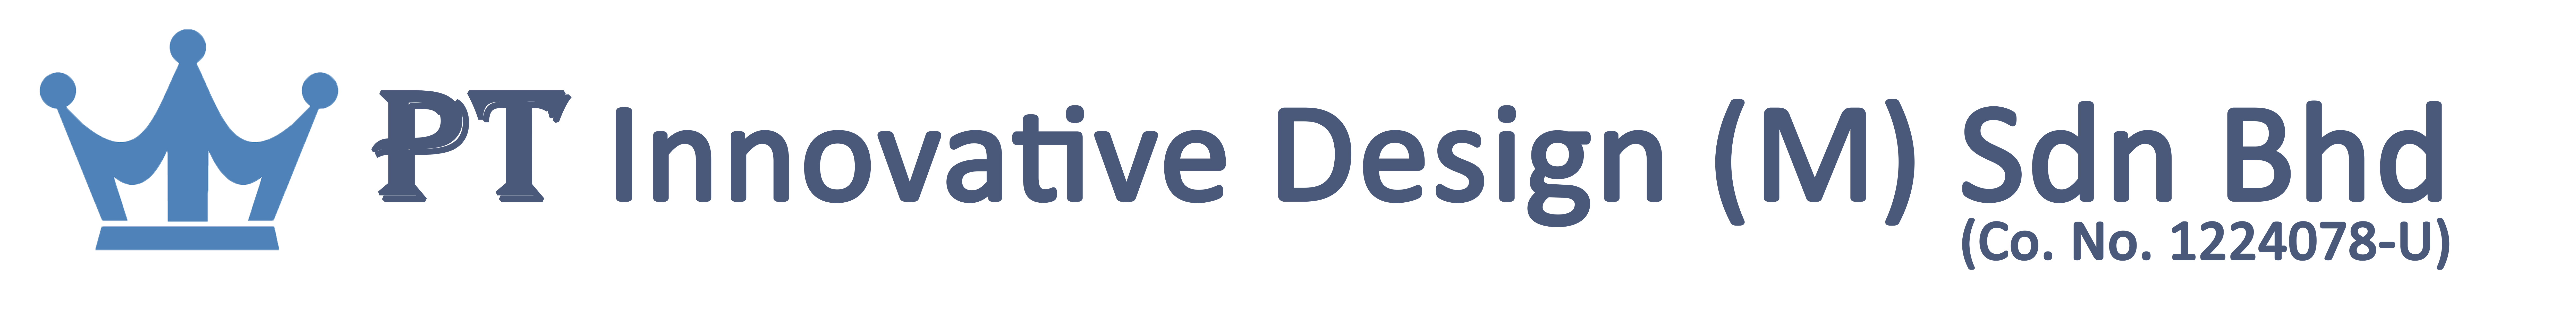 Website Logo and Company Name - Rev.01